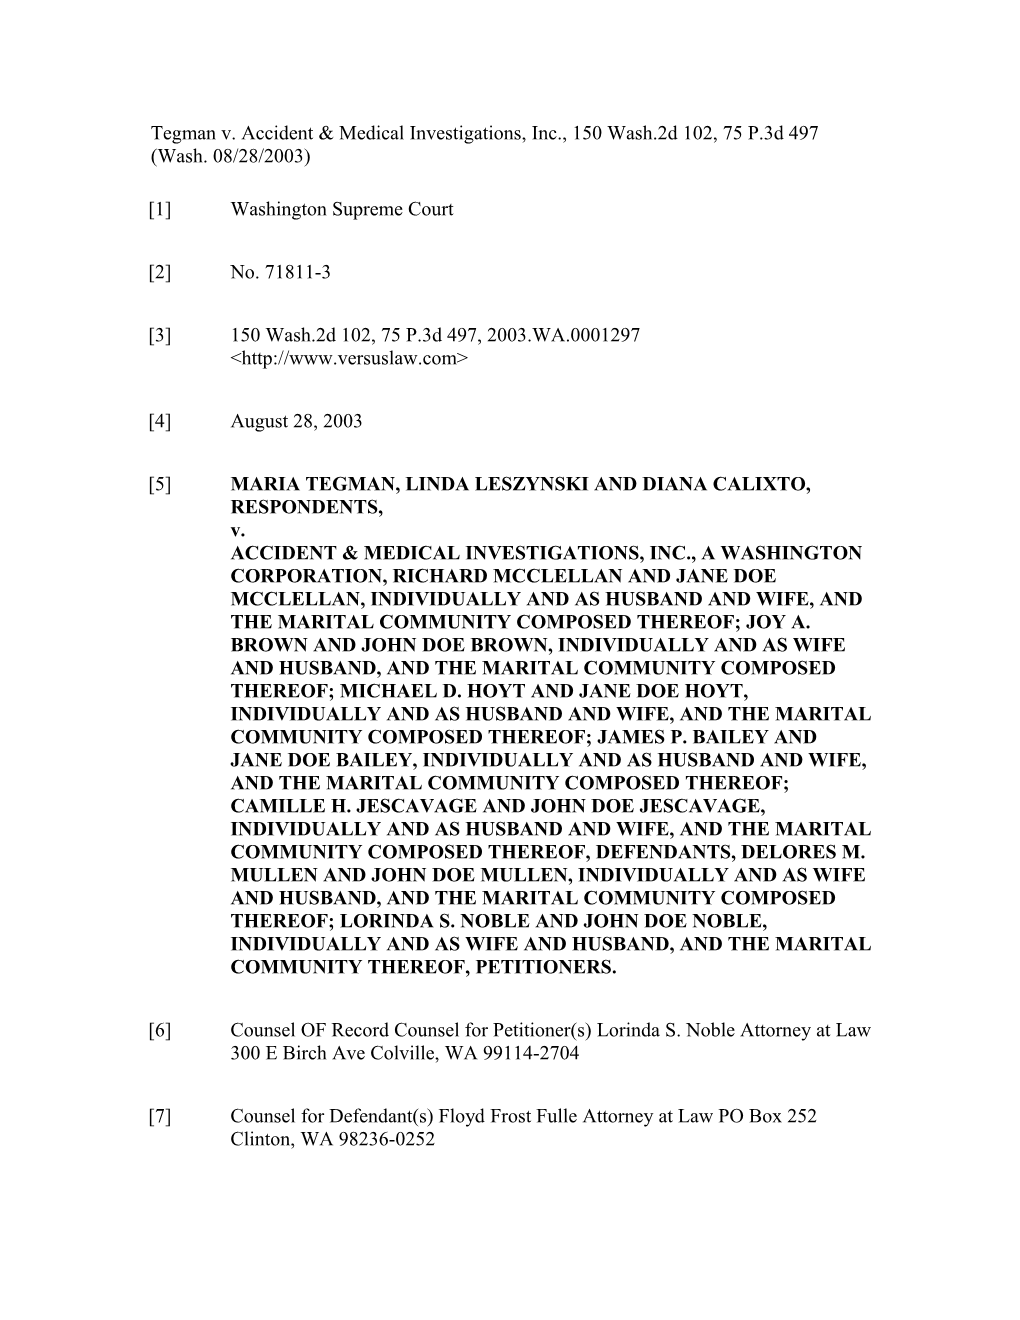 Tegman V. Accident & Medical Investigations, Inc., 150 Wash.2D 102, 75 P.3D 497